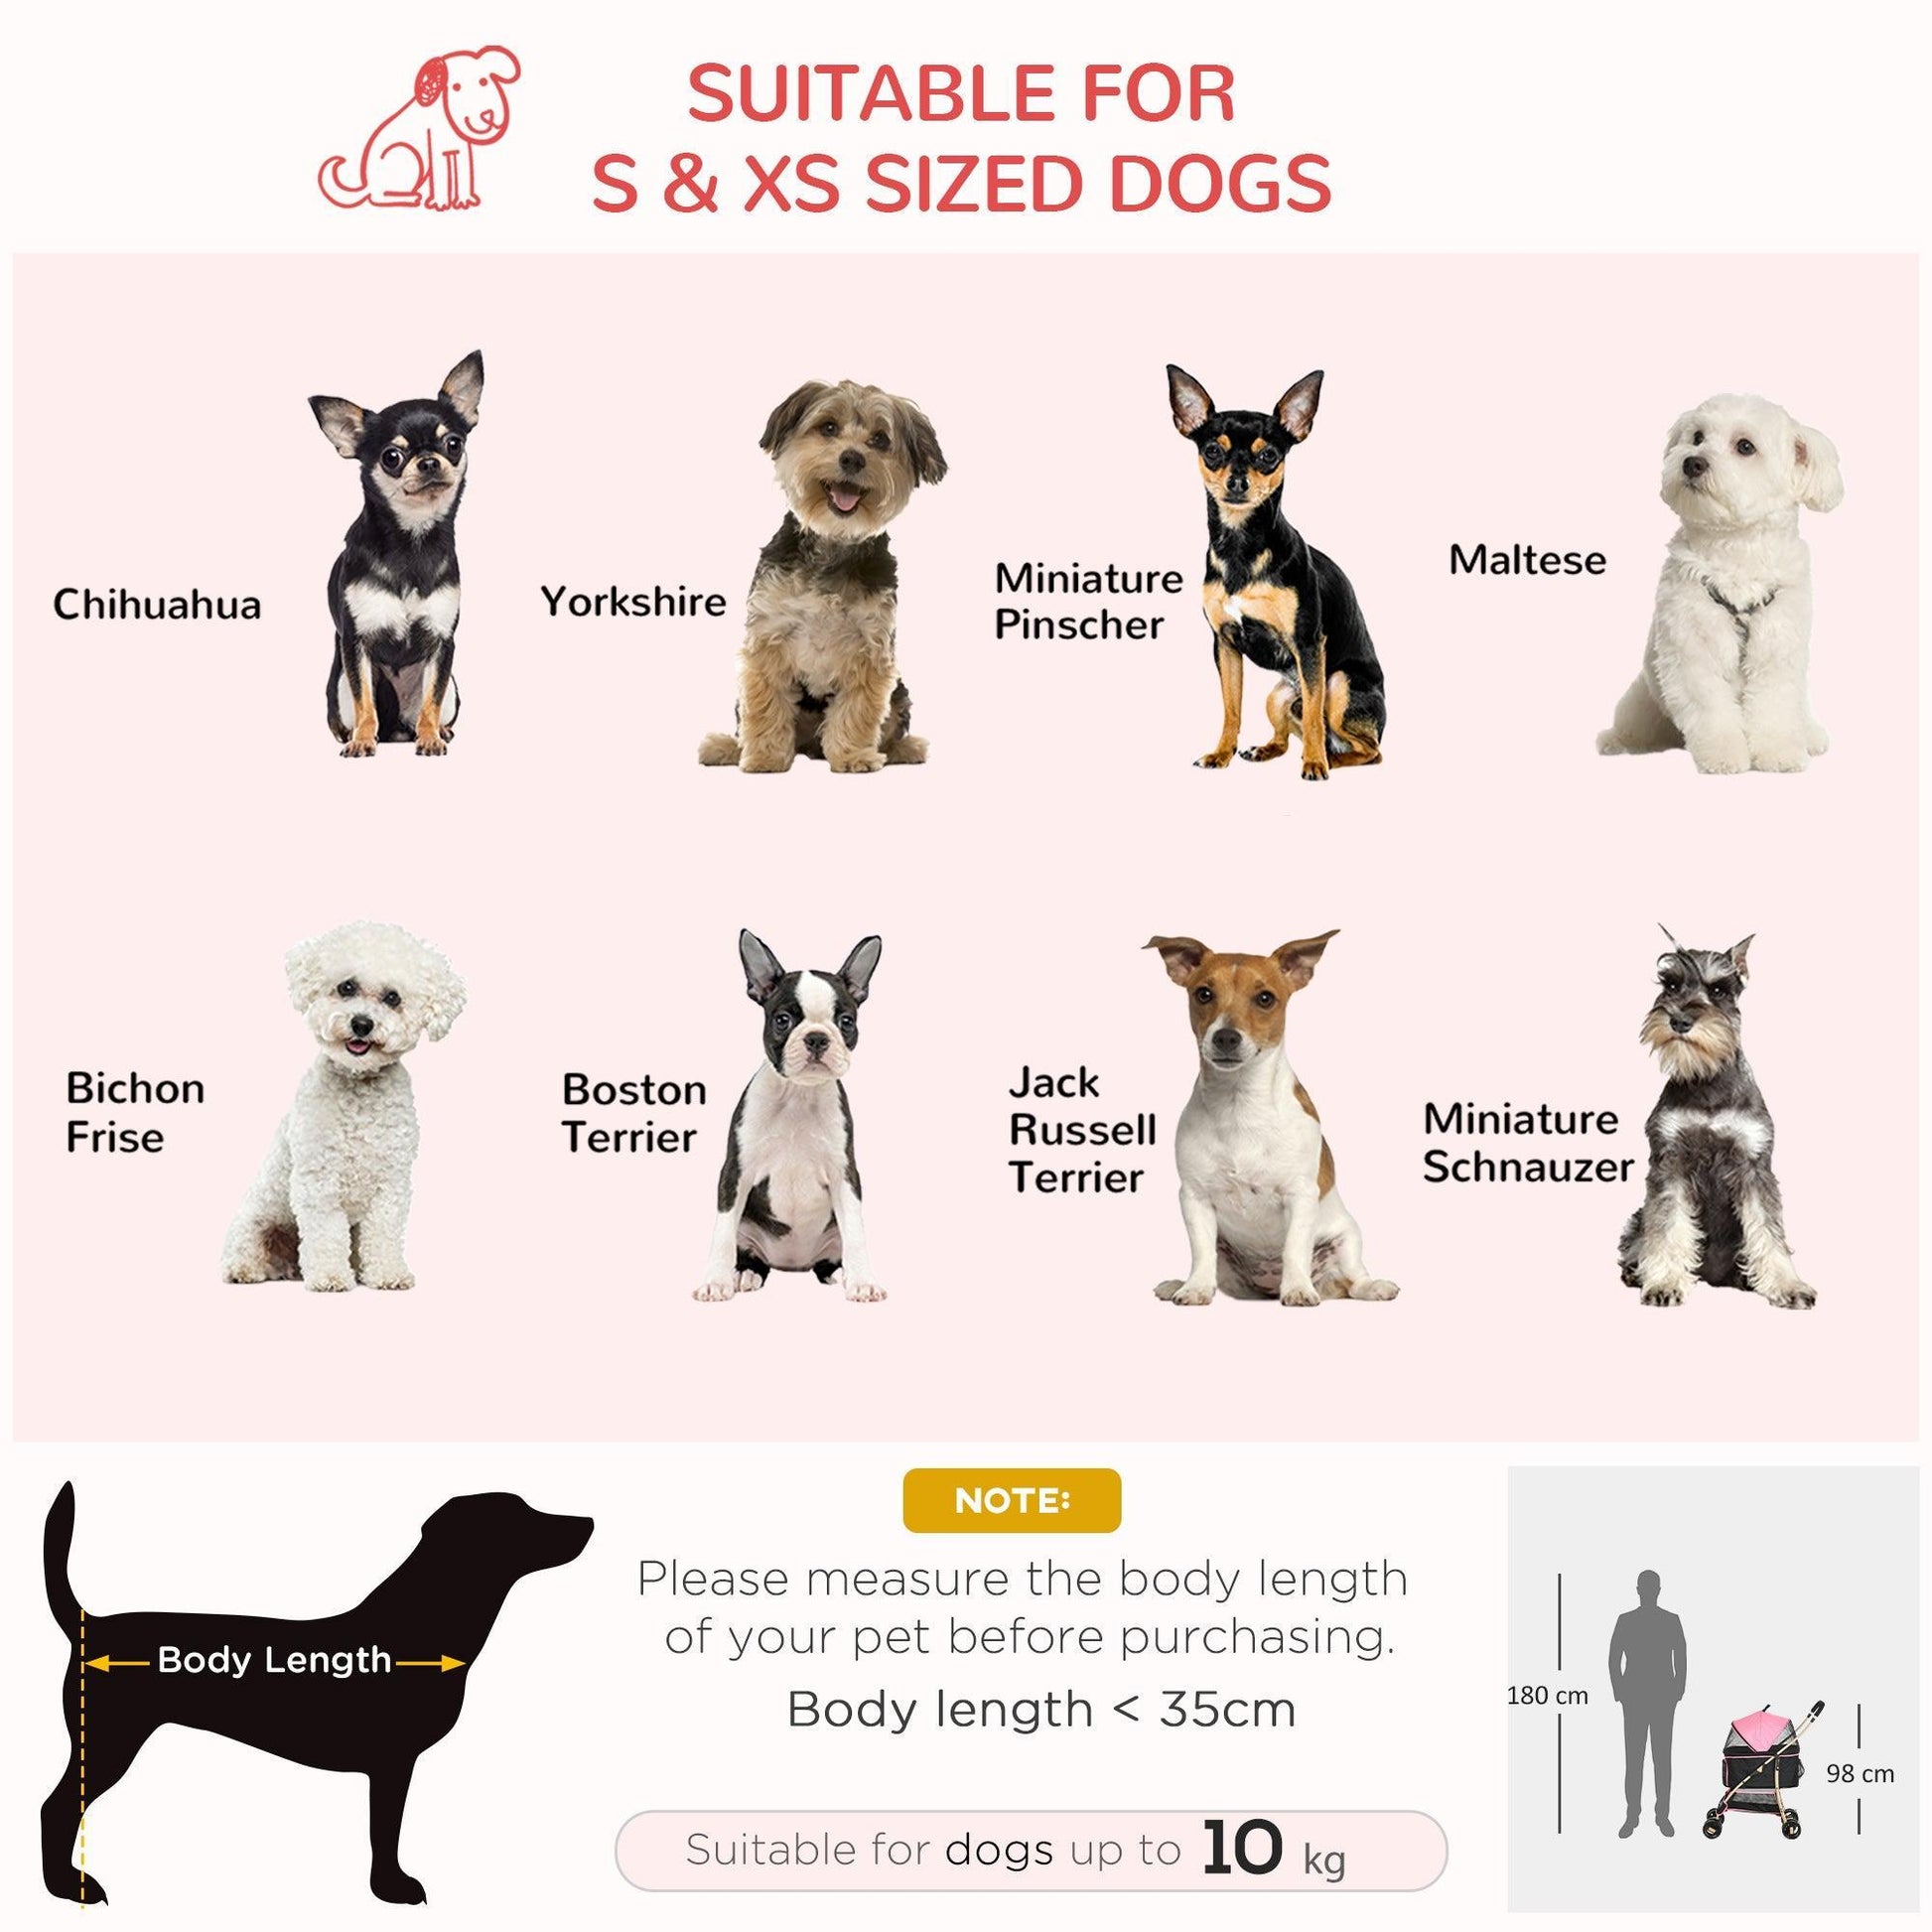 PawHut Pet Stroller: Foldable & Versatile - ALL4U RETAILER LTD